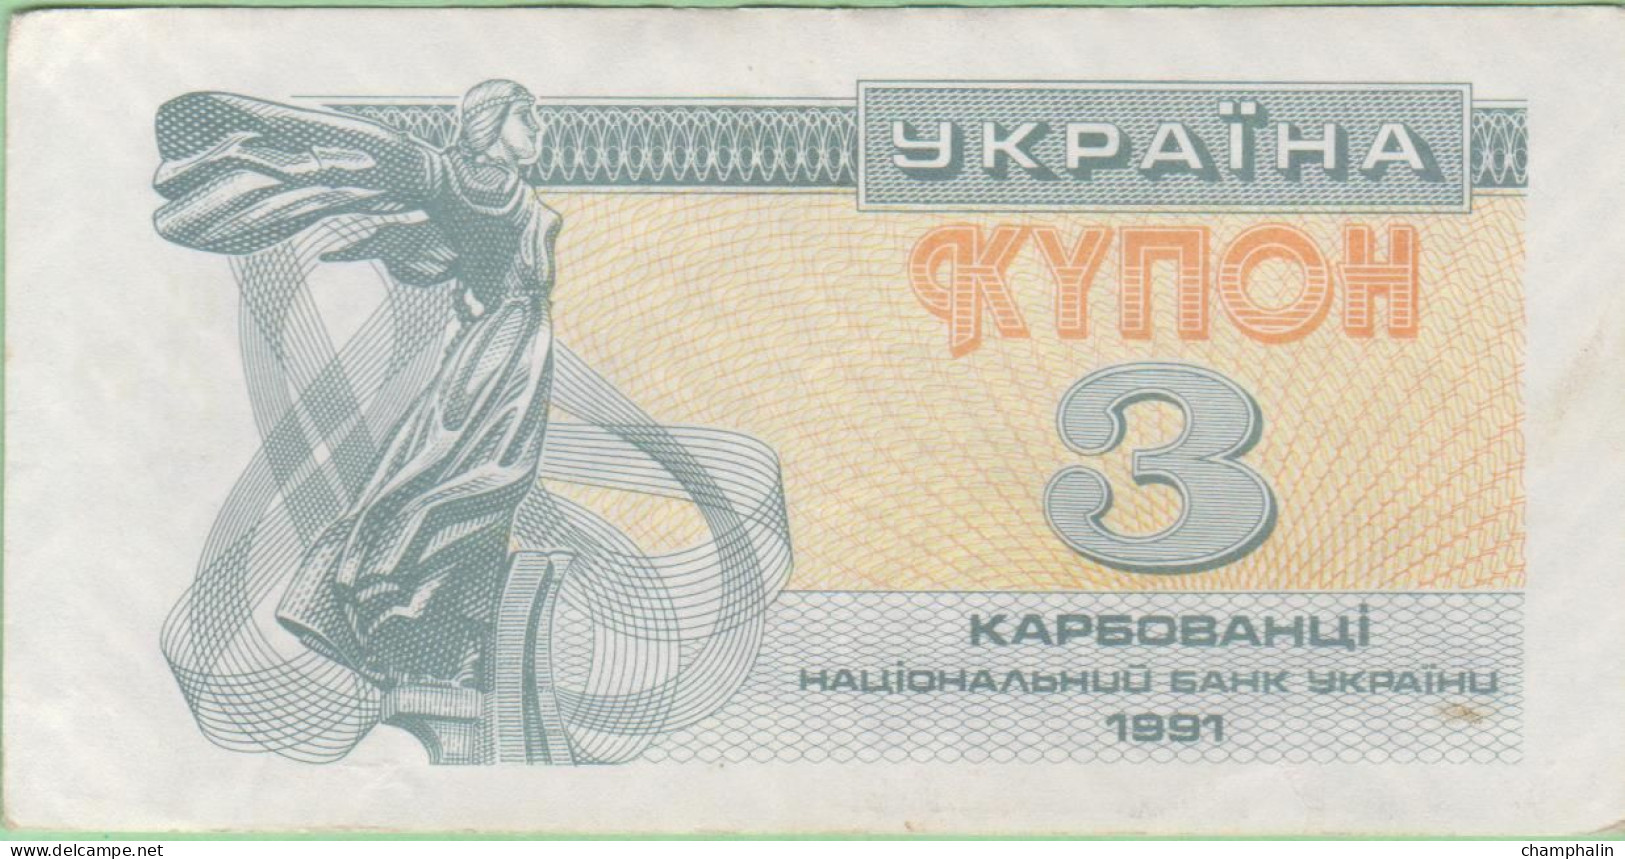 Ukraine - Billet De 3 Karbovantzi - 1991 - P82a - Ukraine